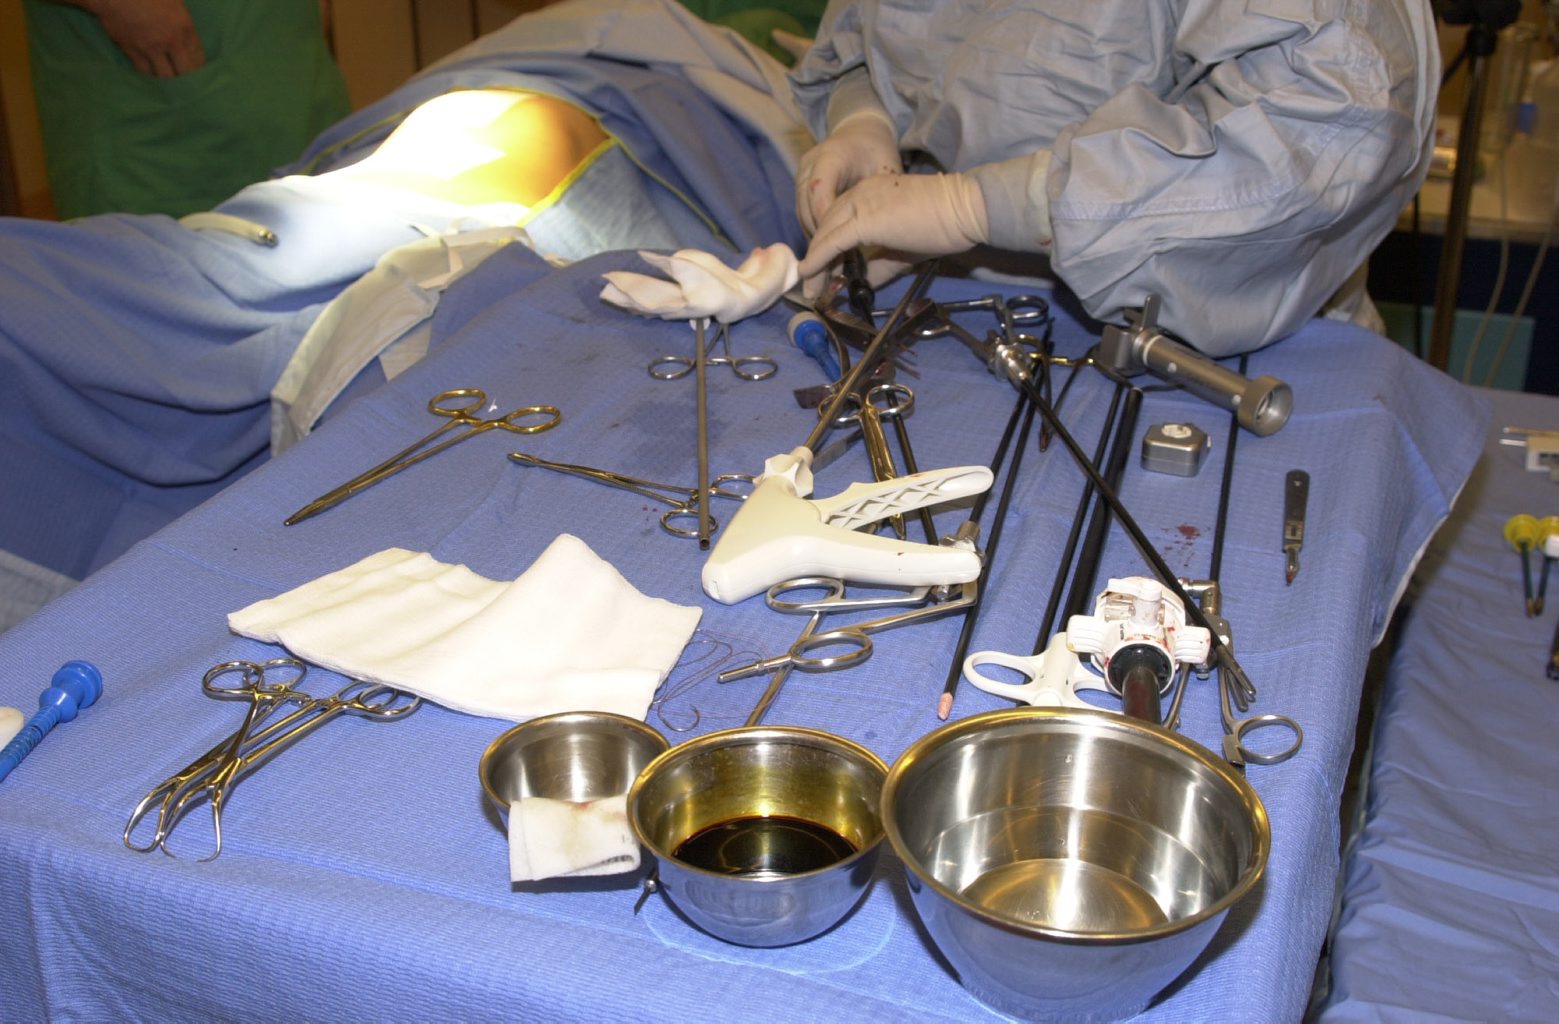 Hopital de Nyon opération au moyen d'un robot  bras articulé
ablation vésicule biliaire par le medecin chirurgien Alfred 
Blaser 25.09.2000 Hopital de Nyon opération au moyen d'un robot  bras articulé